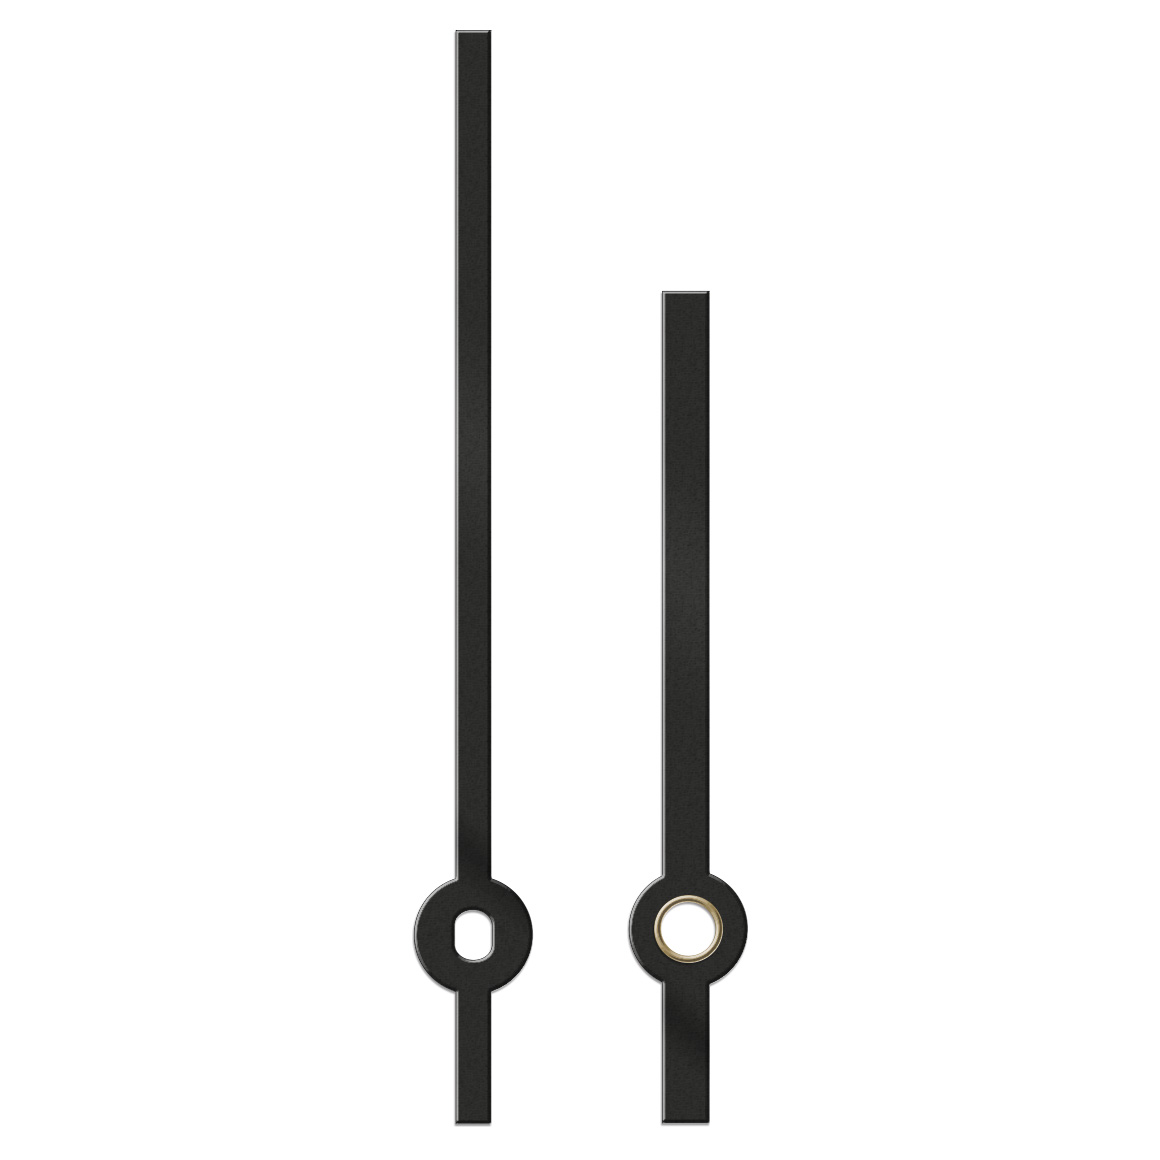 Paire d'aiguilles, baton, longueur 87 mm,
aluminium, noir, pour grandes horloges